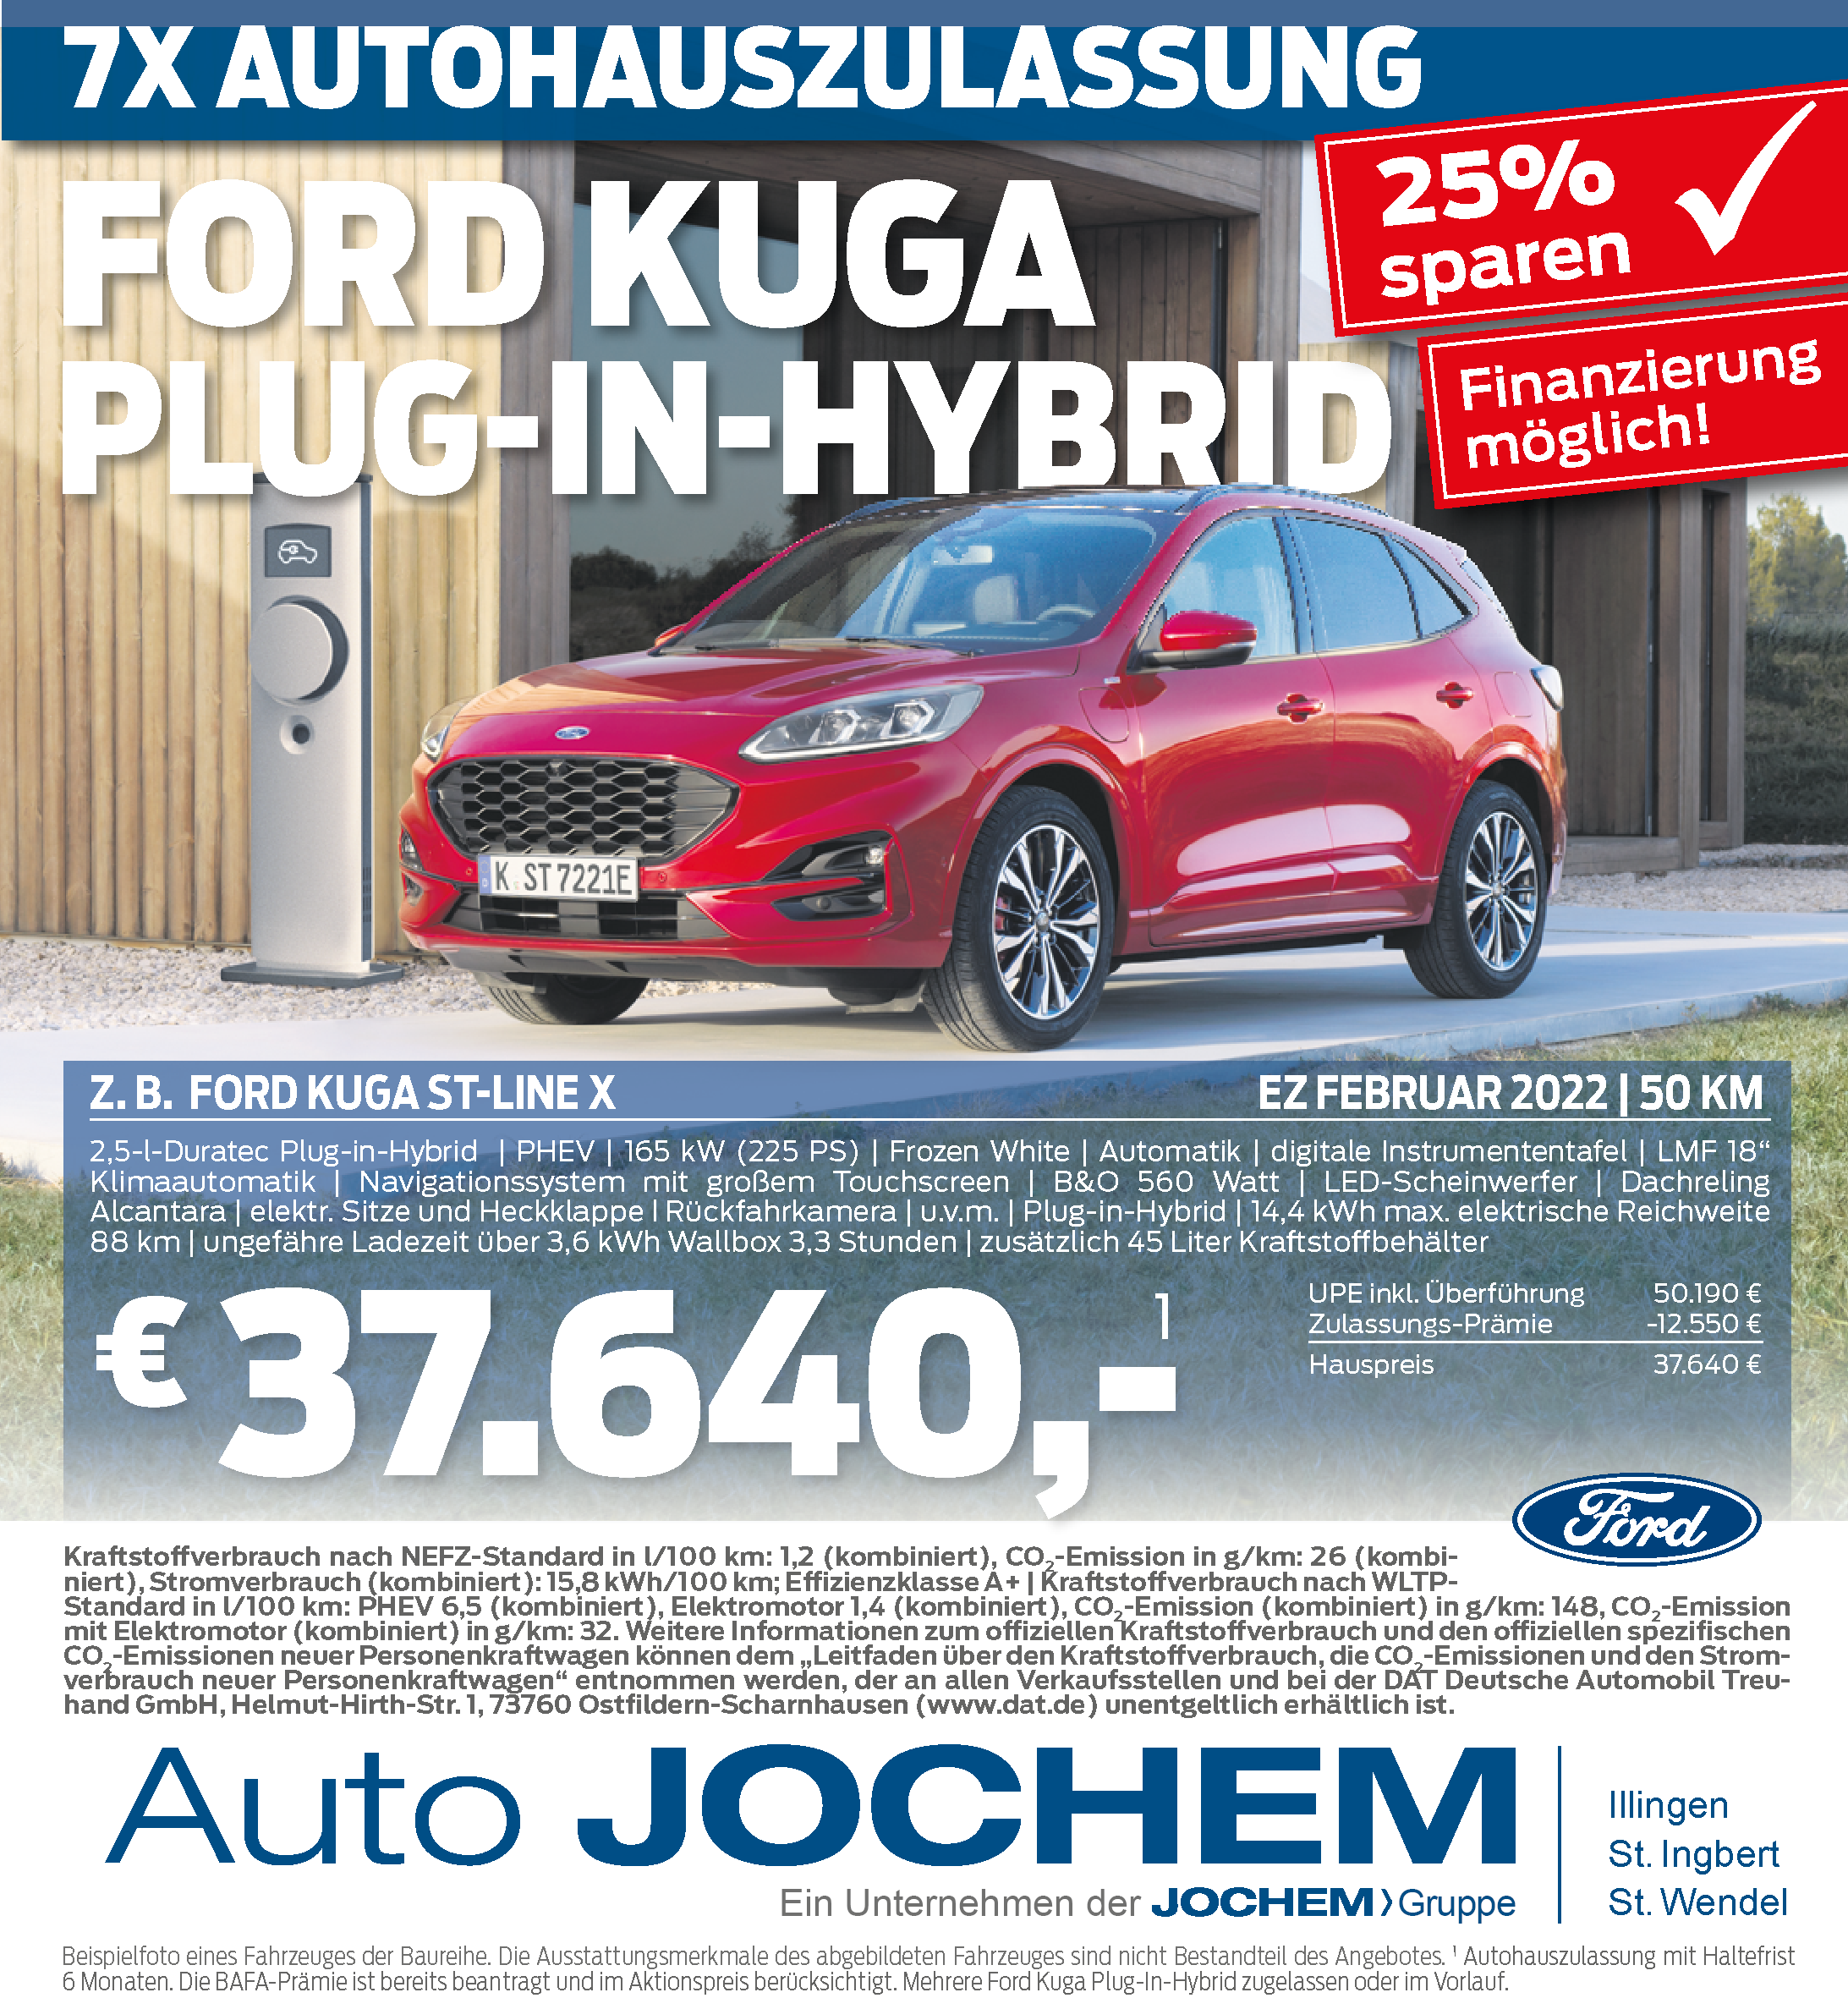 Angebot - Ford Kuga bei Auto-Jochem GmbH in Illingen, St. Ingbert und St. Wendel